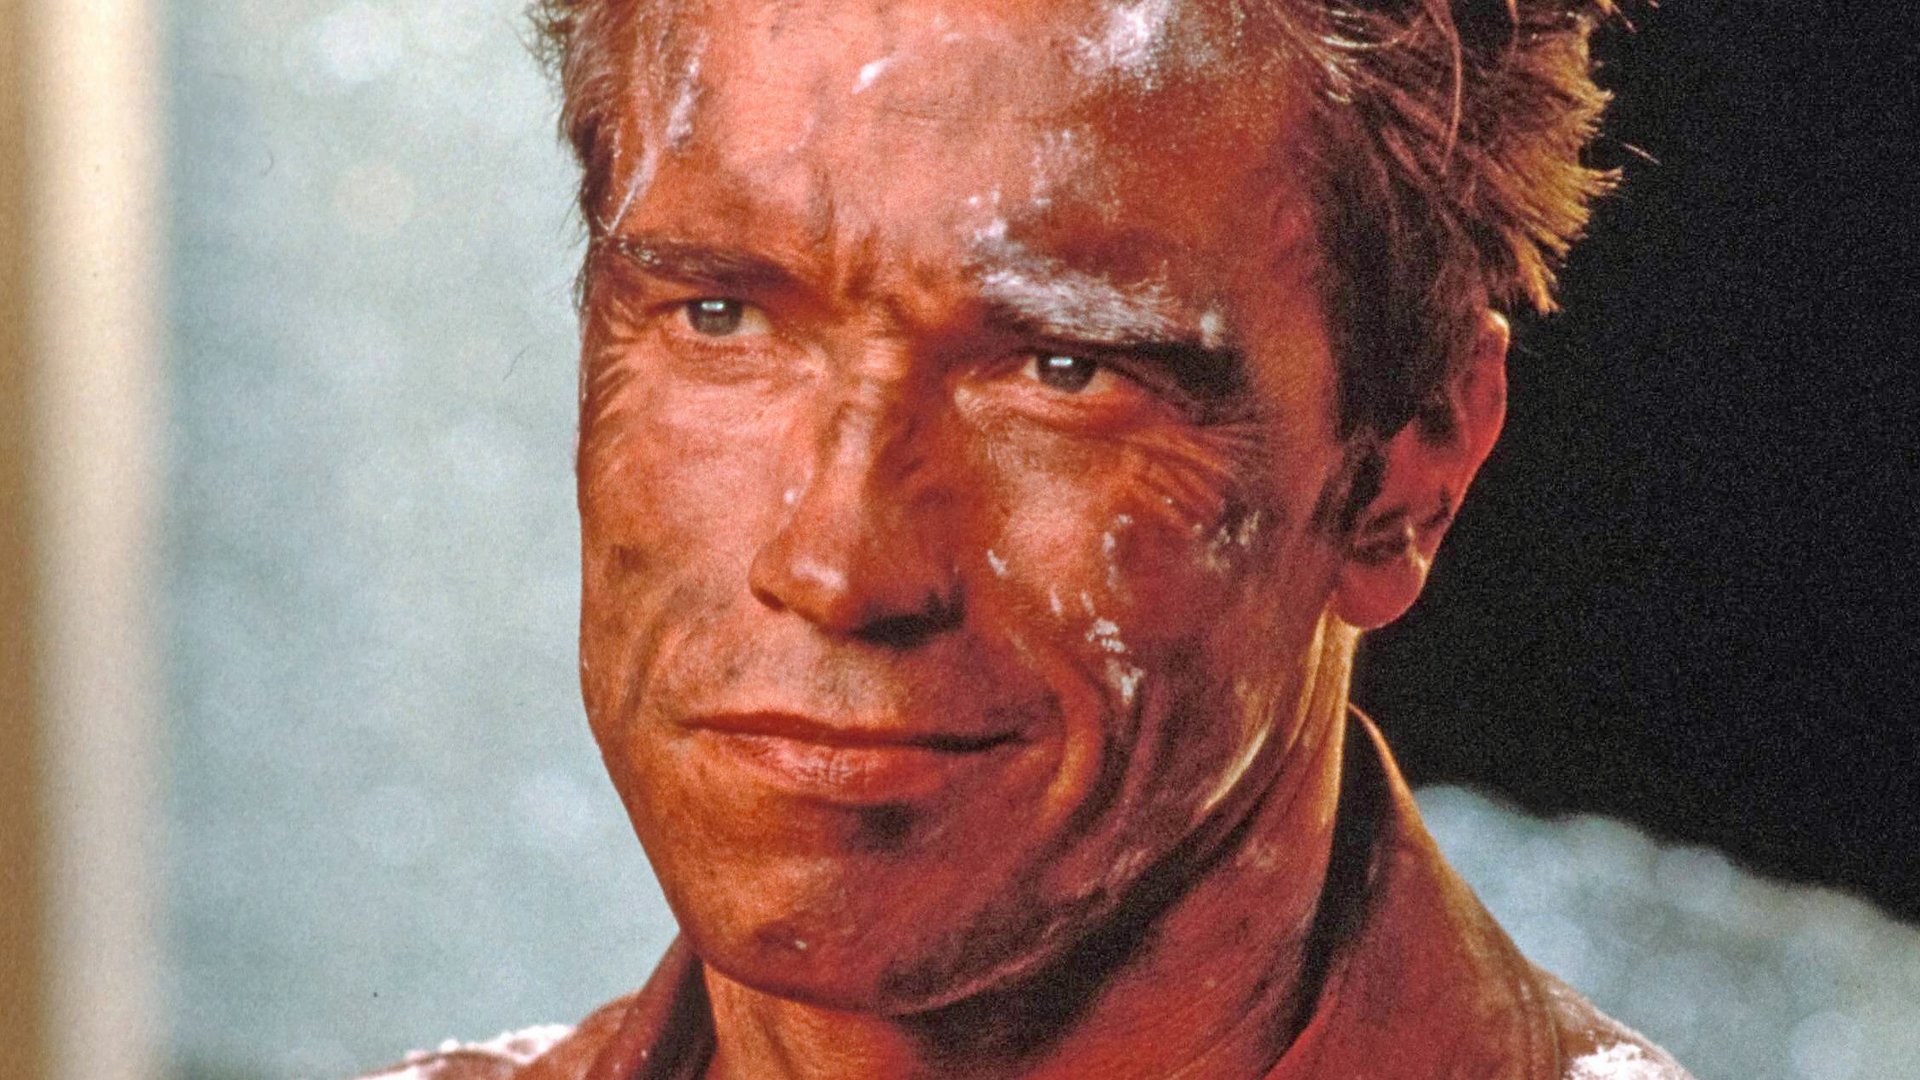 #Lieblingsfilm von Arnold Schwarzenegger, der im Kino gefloppt ist